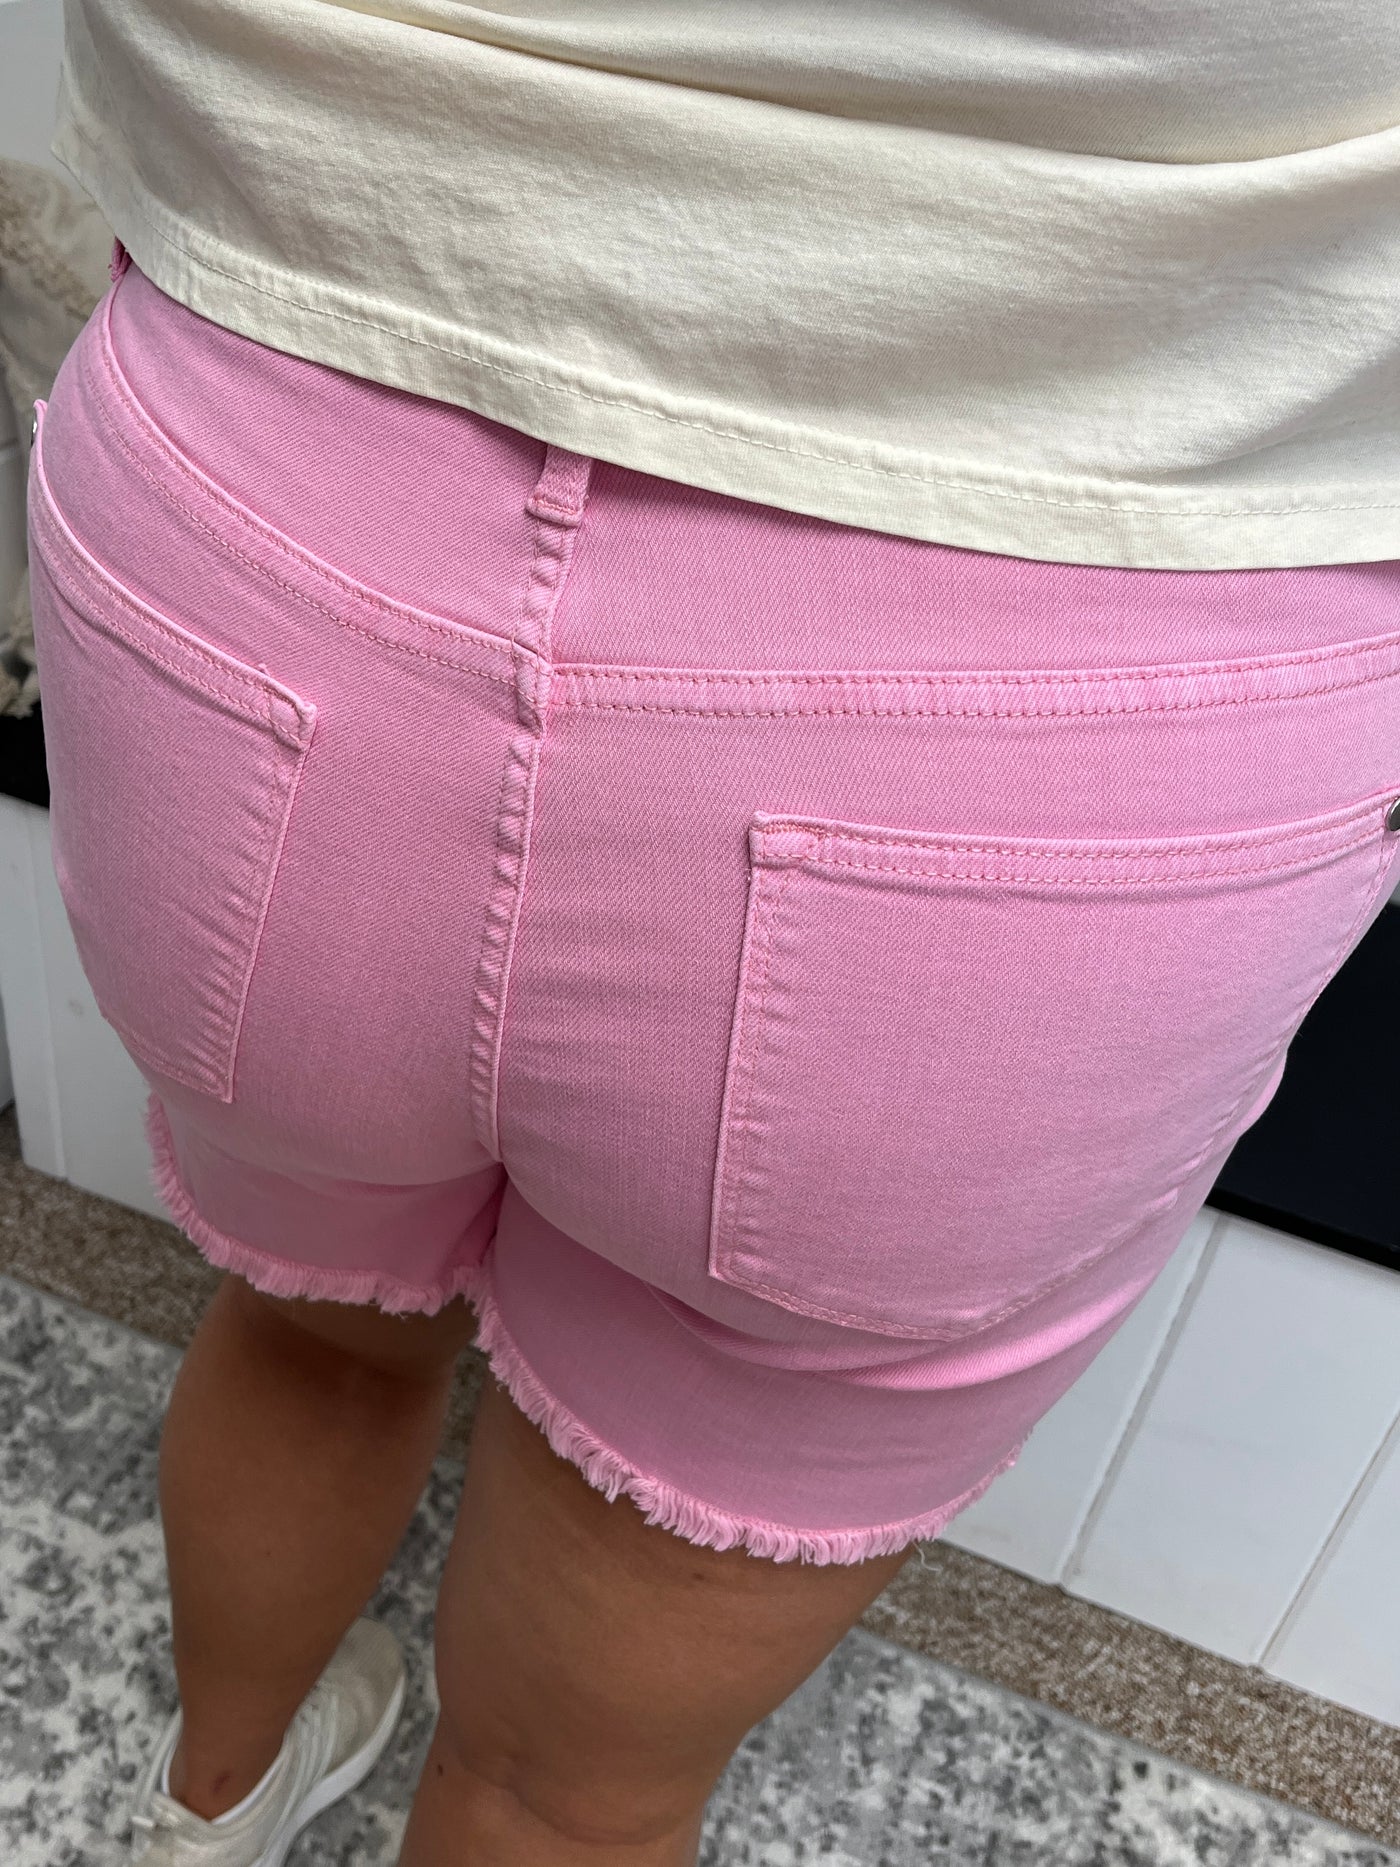 Judy Blue Light Pink Shorts